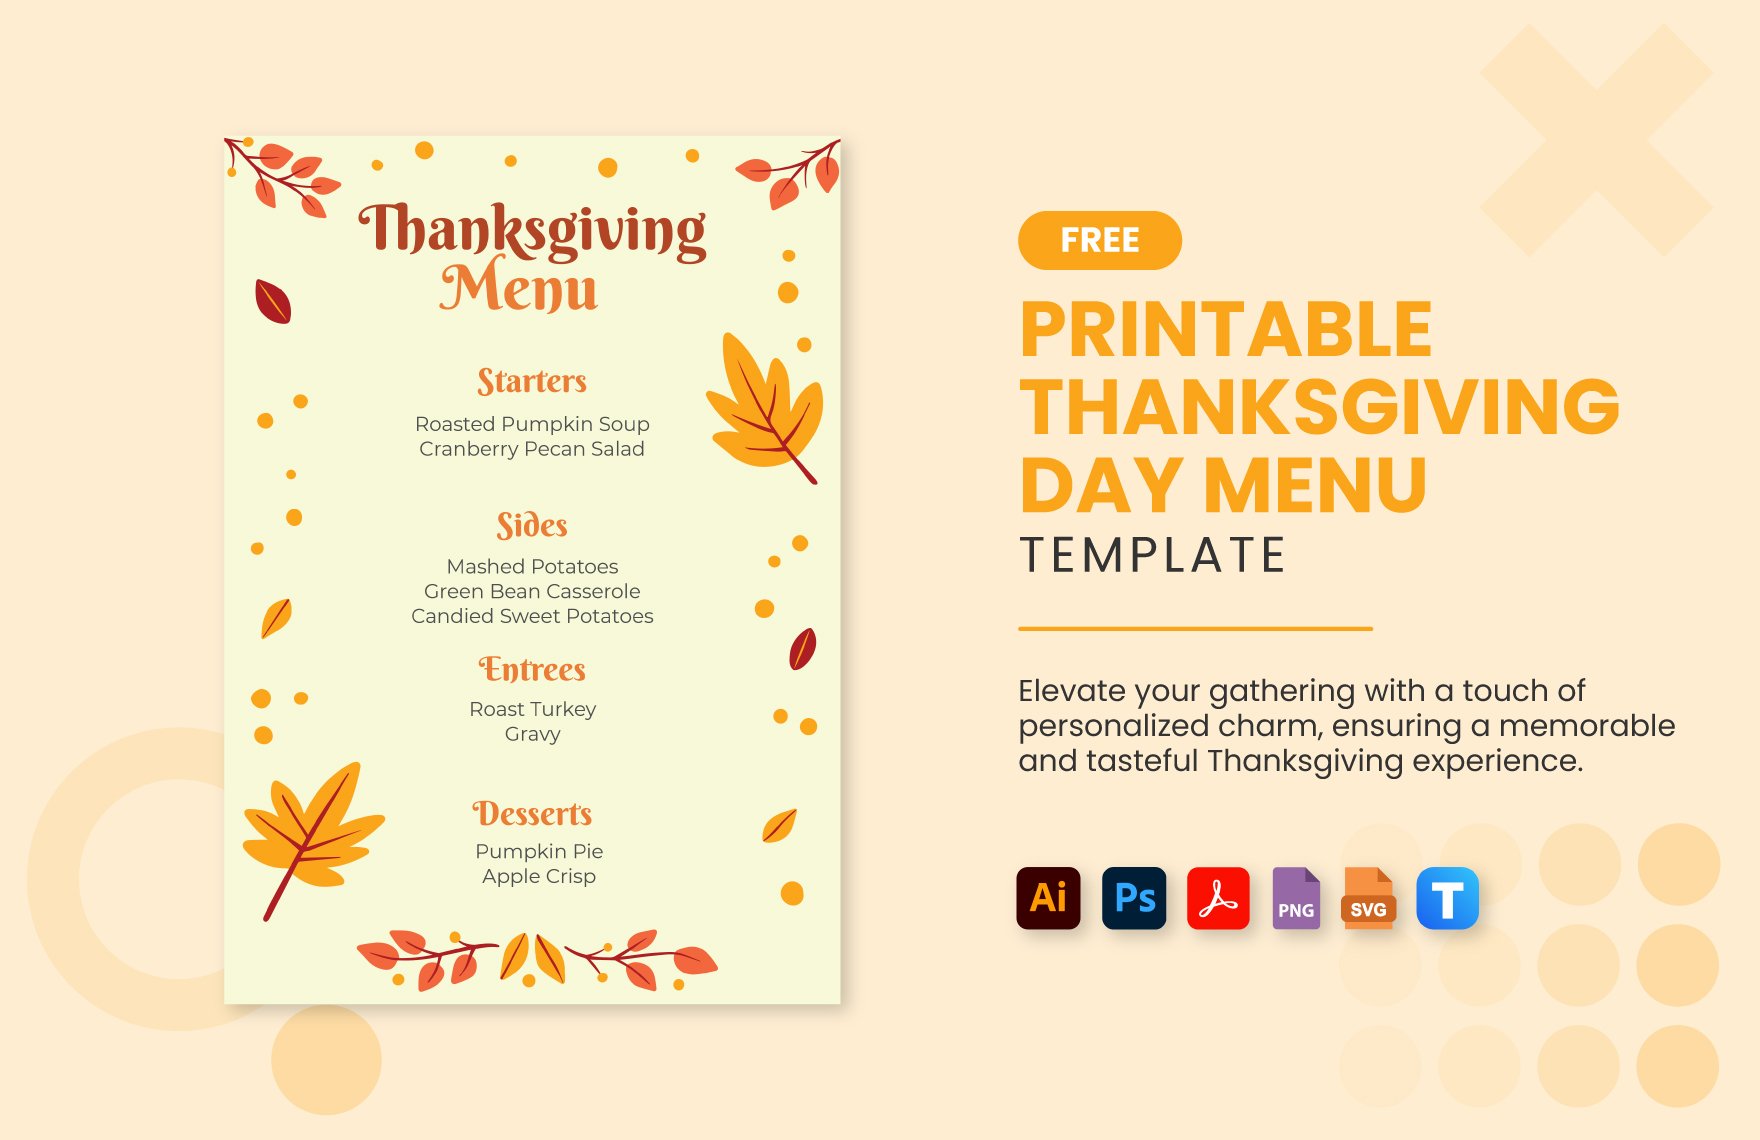 Free Printable Thanksgiving Day Menu in PDF, Illustrator, PSD, SVG, PNG